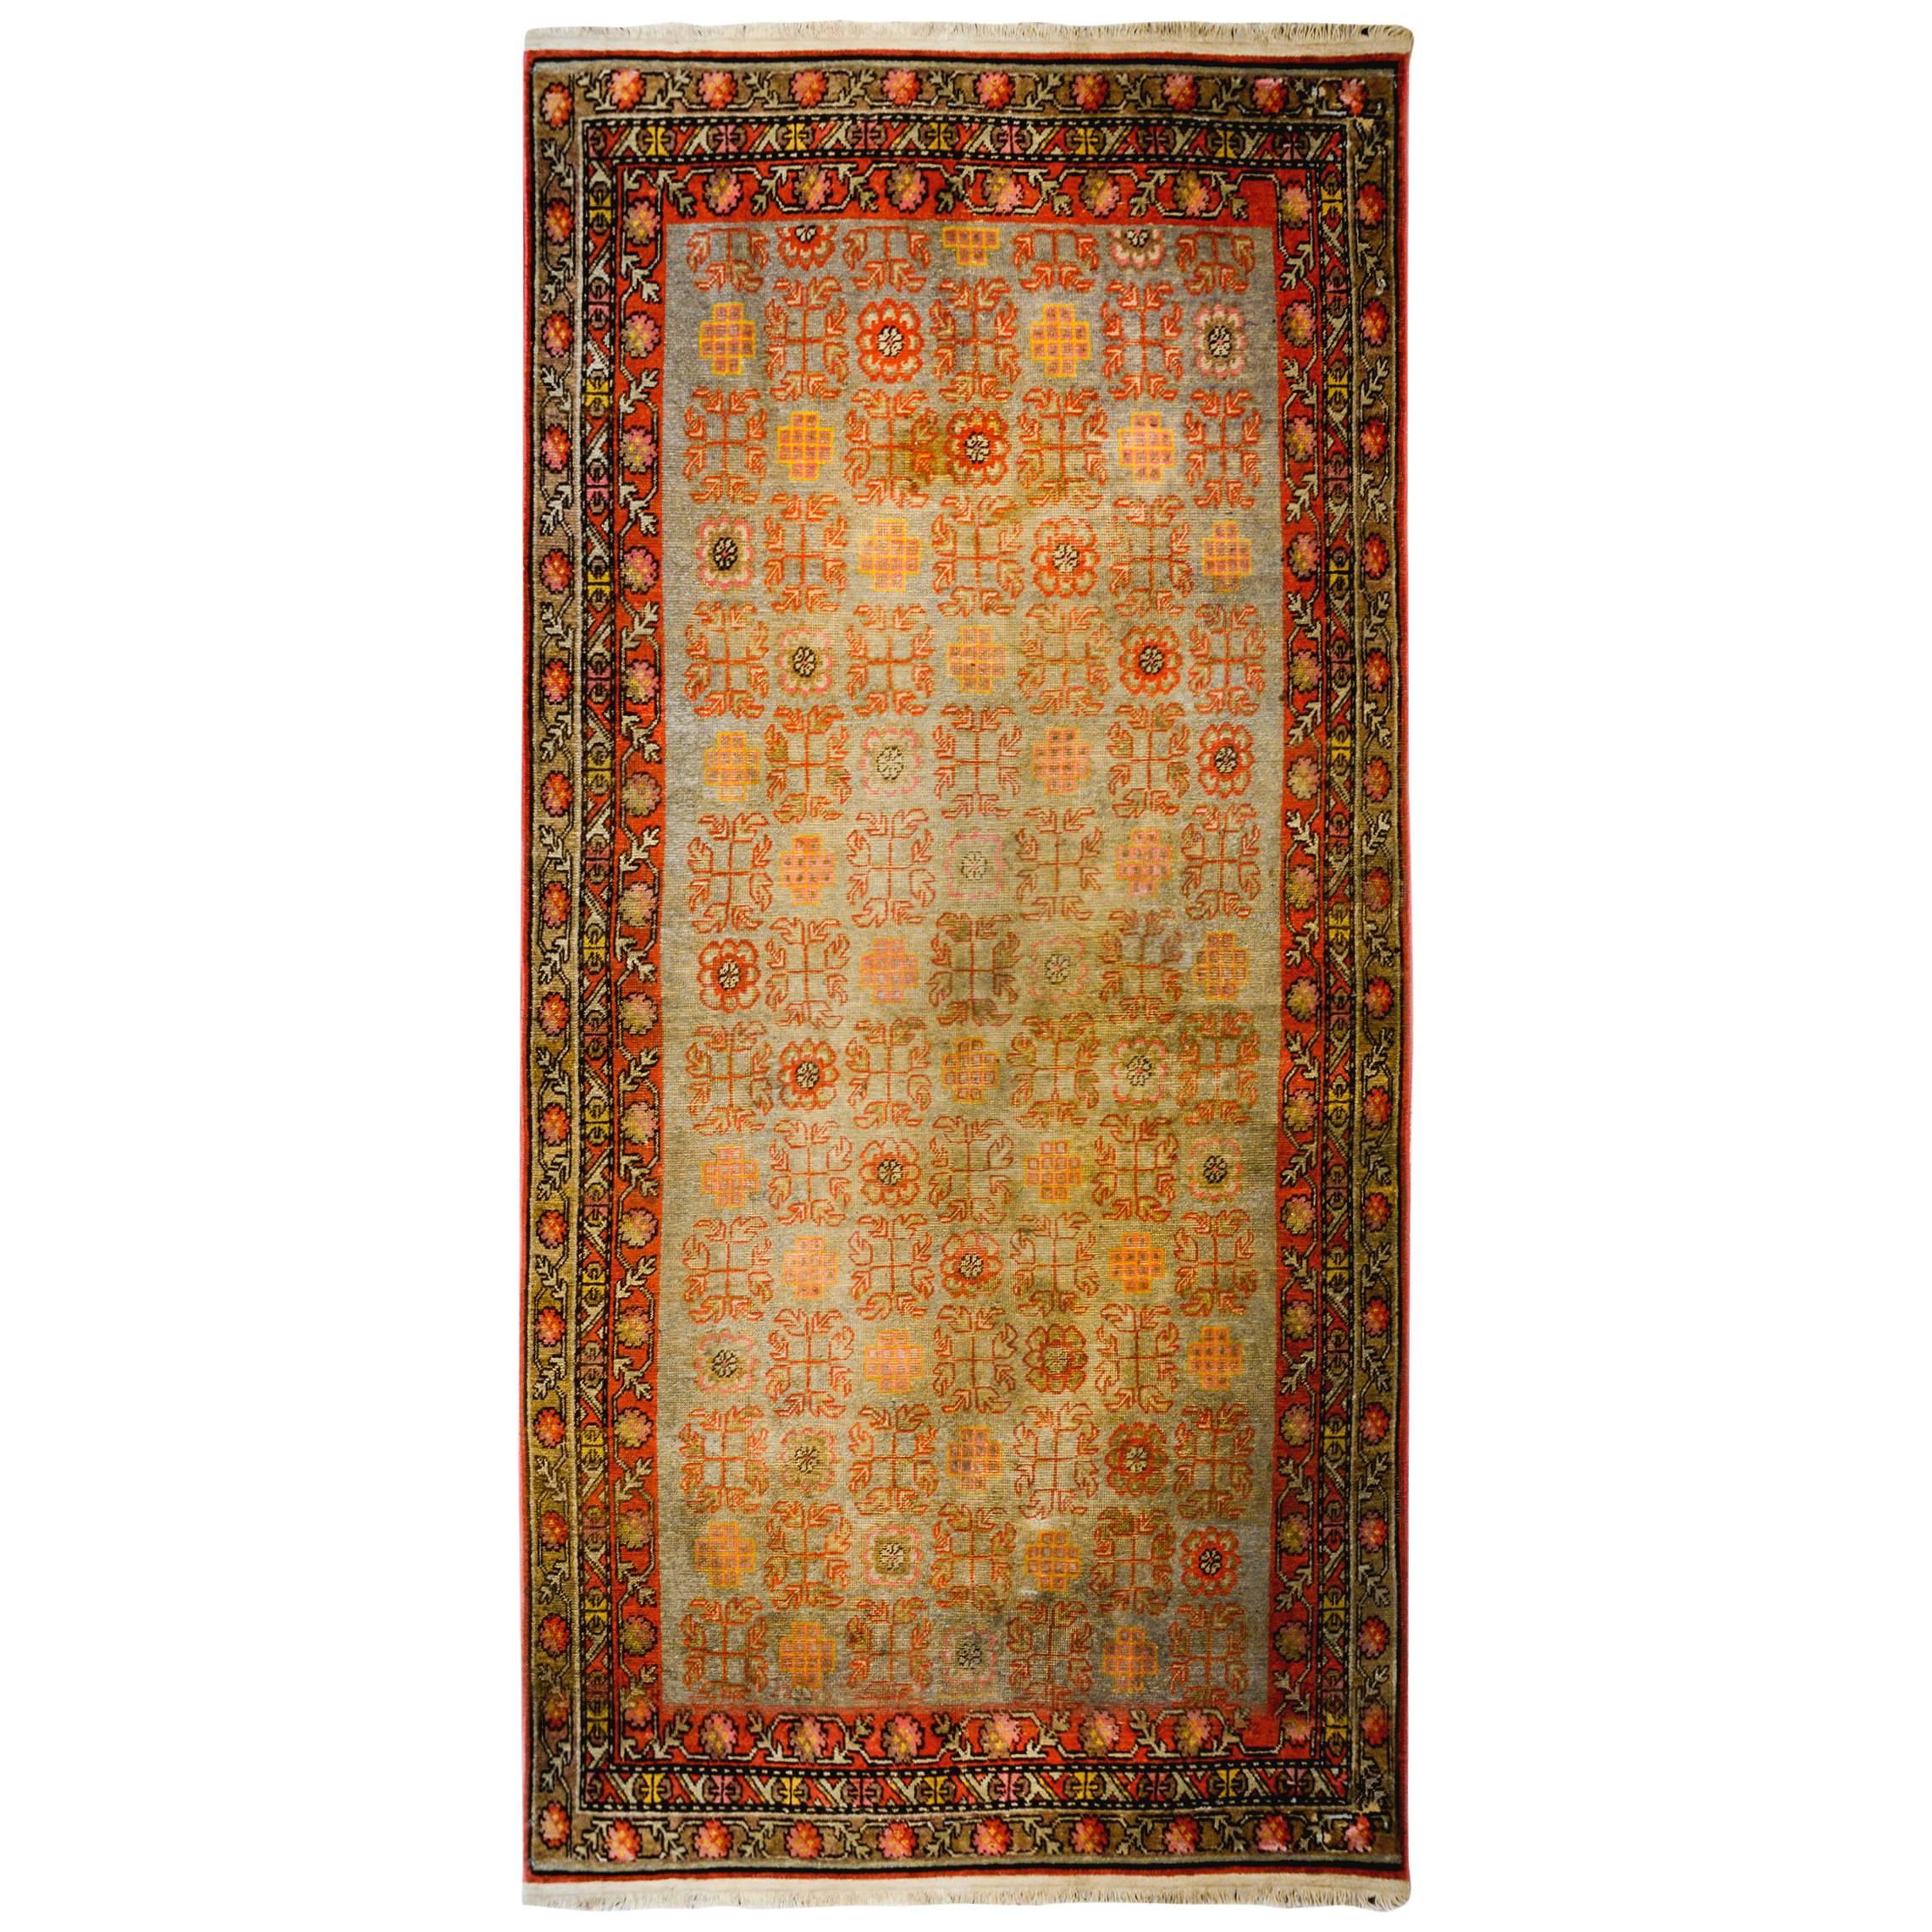 Wunderschöner Teppich aus dem frühen 20. Jahrhundert aus Khotan